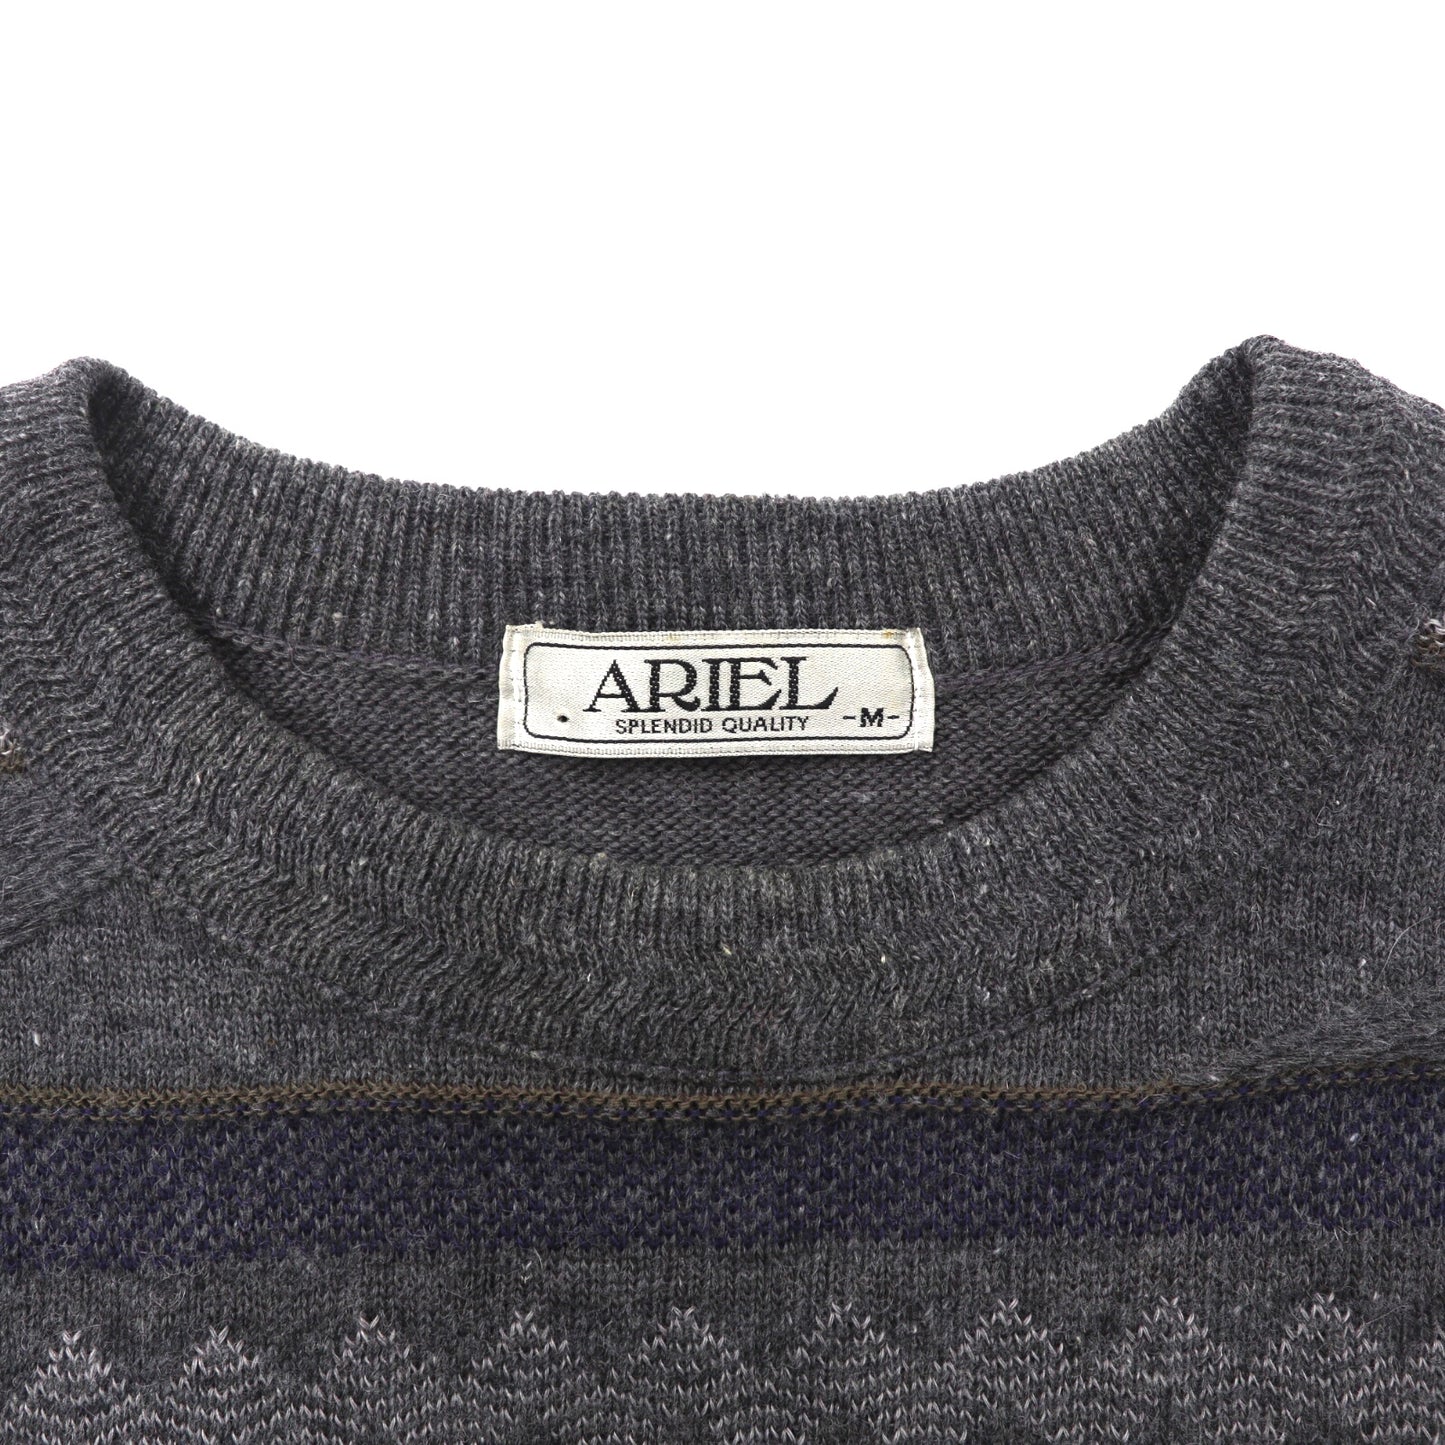 ARIEL 3Dニットセーター M グレー ウール カシミヤ混 総柄 日本製